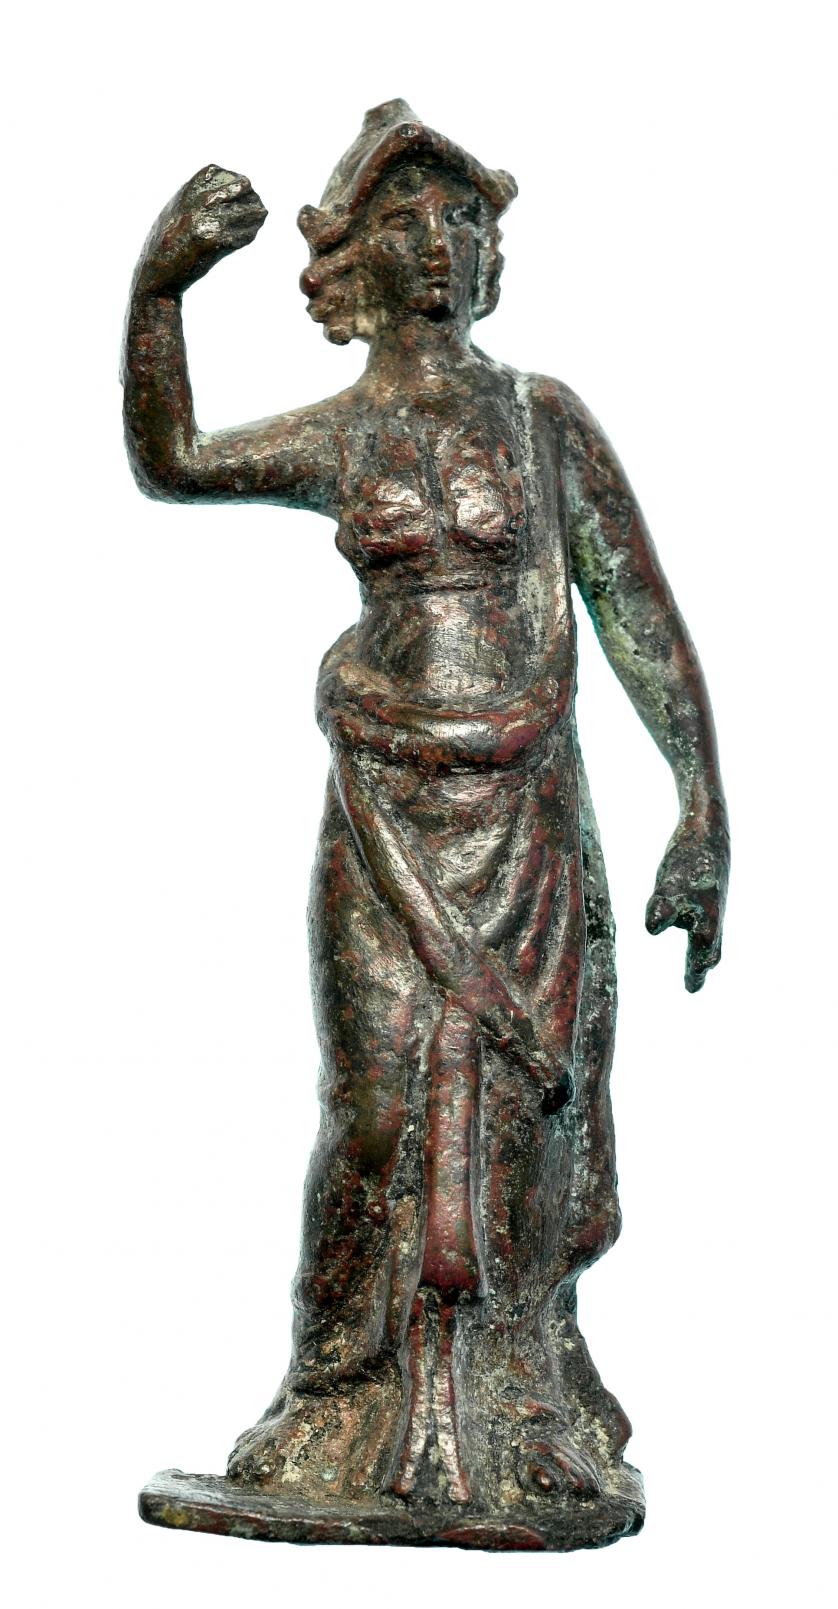 721   -  ROMA. Imperio Romano. Bronce. Figura exenta de Atenea. Altura: 8,3 cm. Procedente de colección privada española años 1970-80.